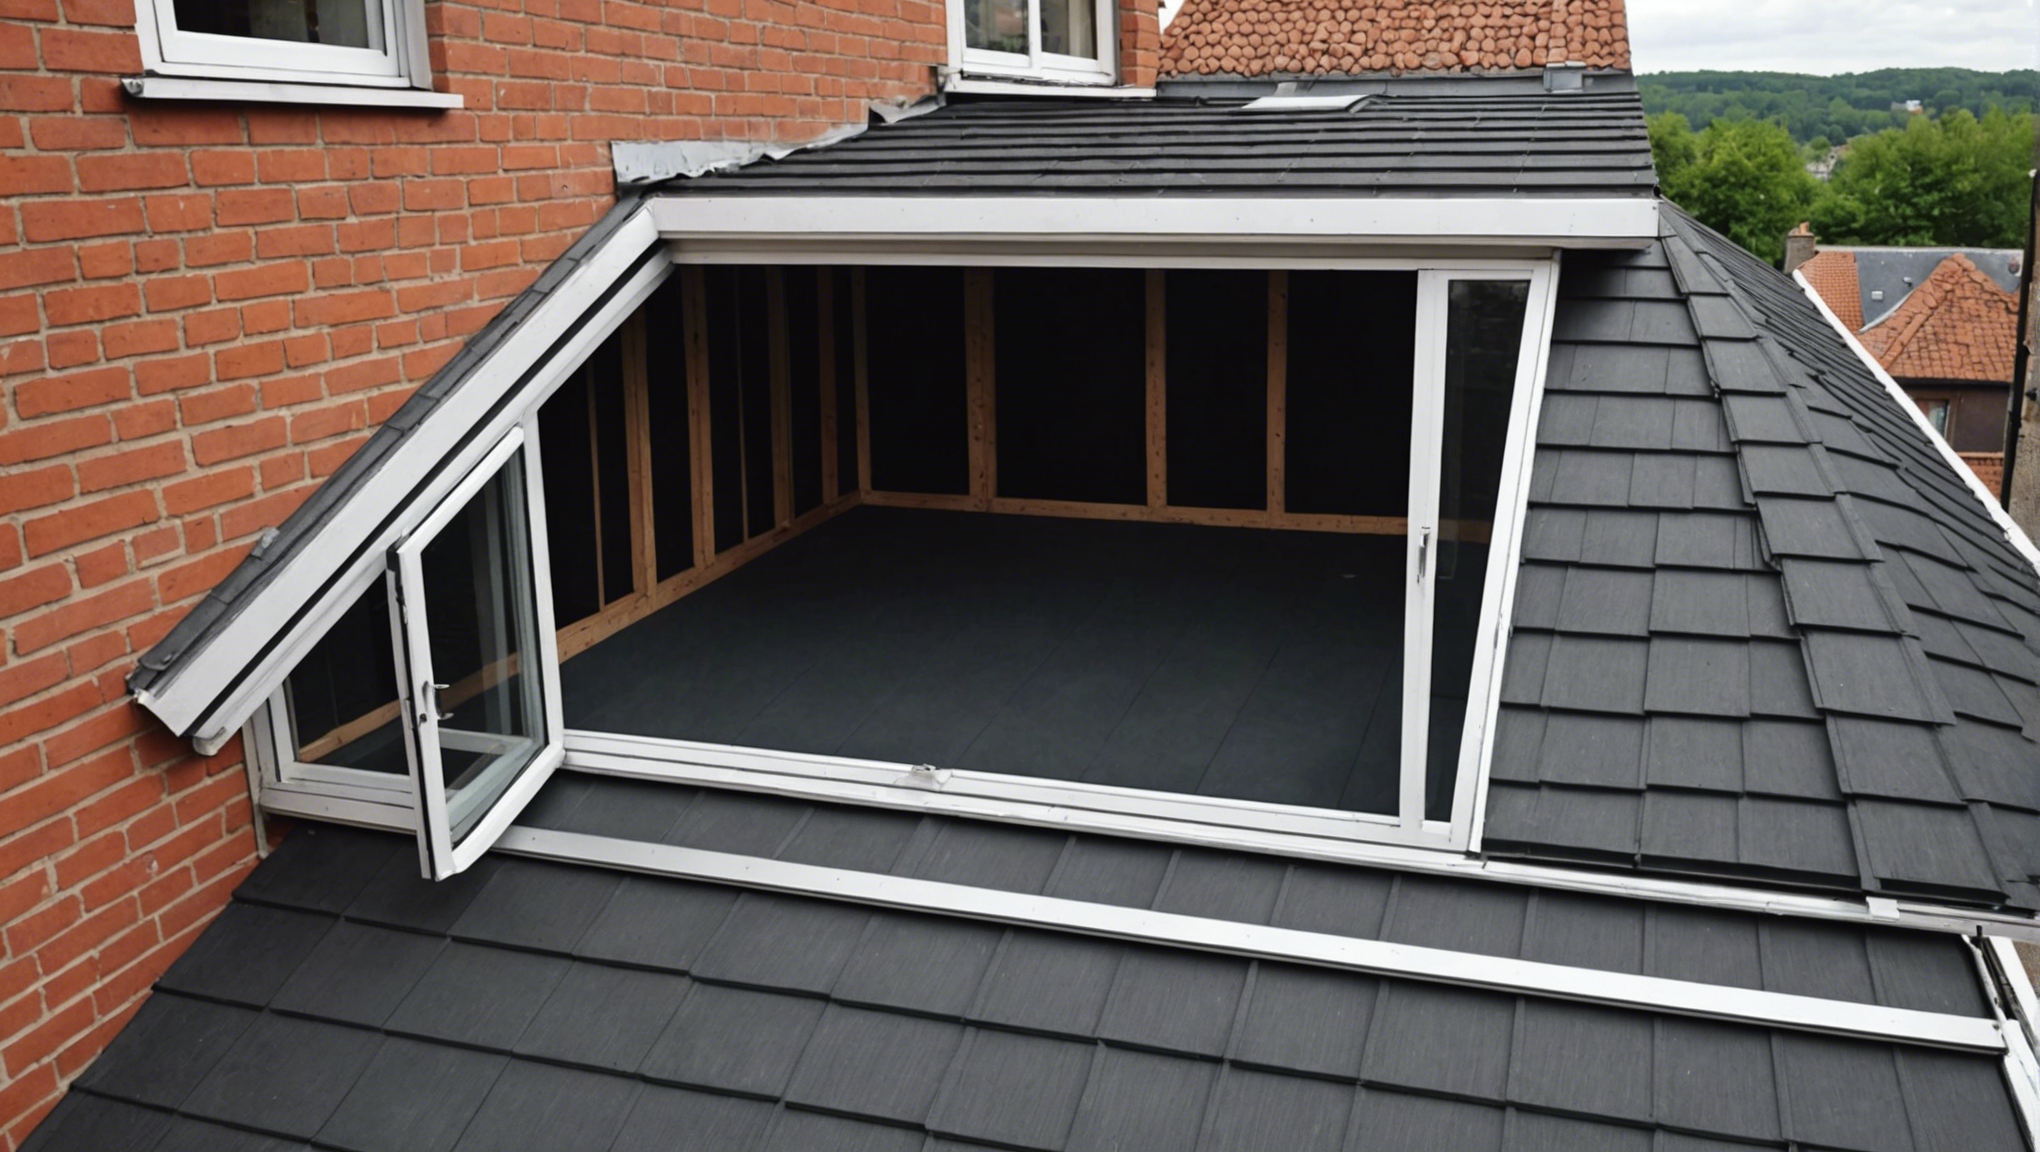 découvrez comment réaliser une isolation de toiture par l'intérieur et optimisez le confort thermique de votre habitation avec nos conseils pratiques et nos solutions innovantes.